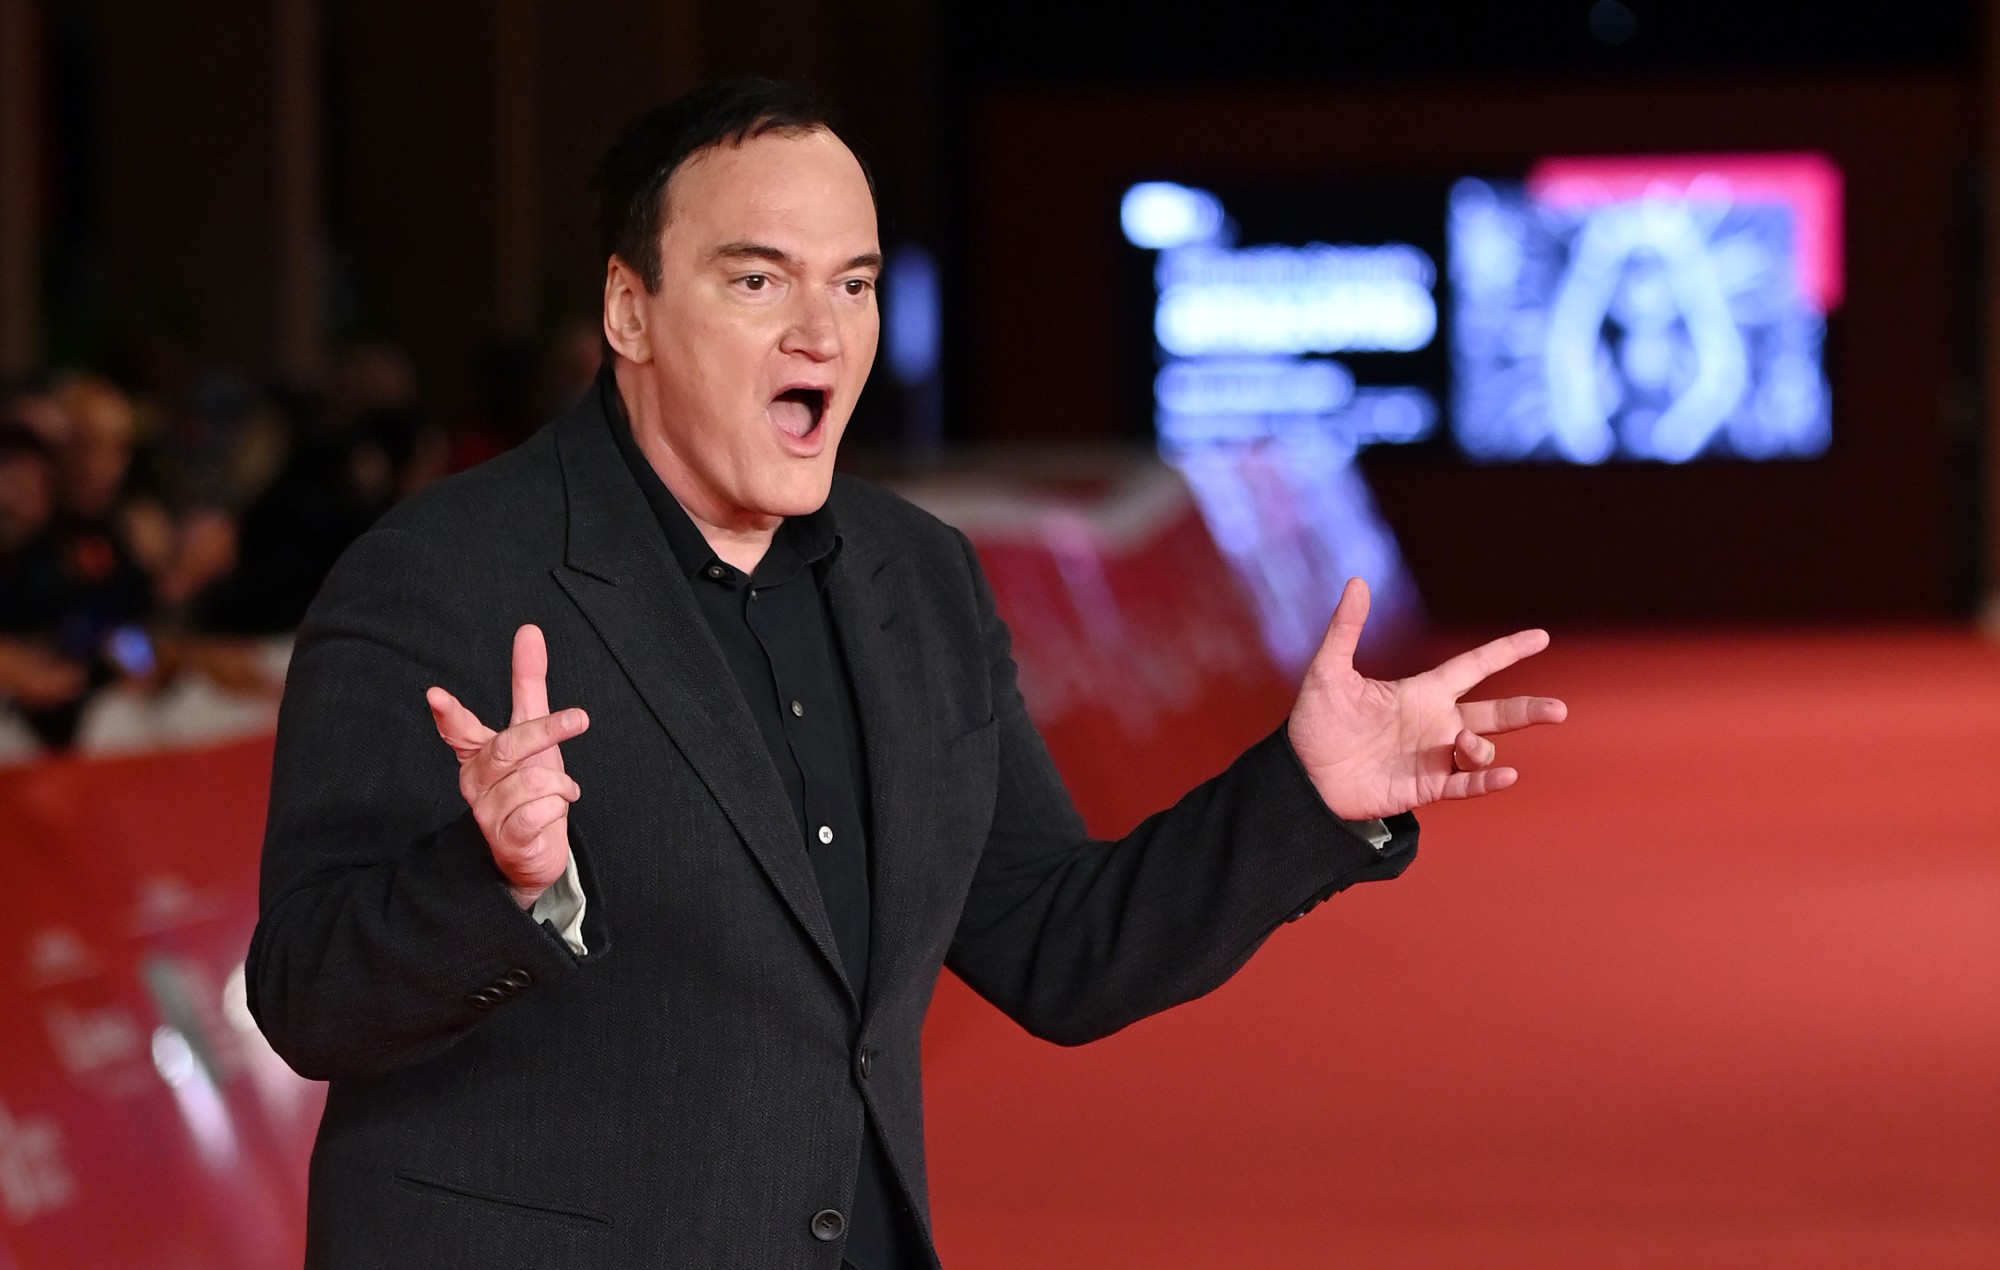 Quentin Tarantino publicará su nuevo libro "Cinema Speculation" a finales de año